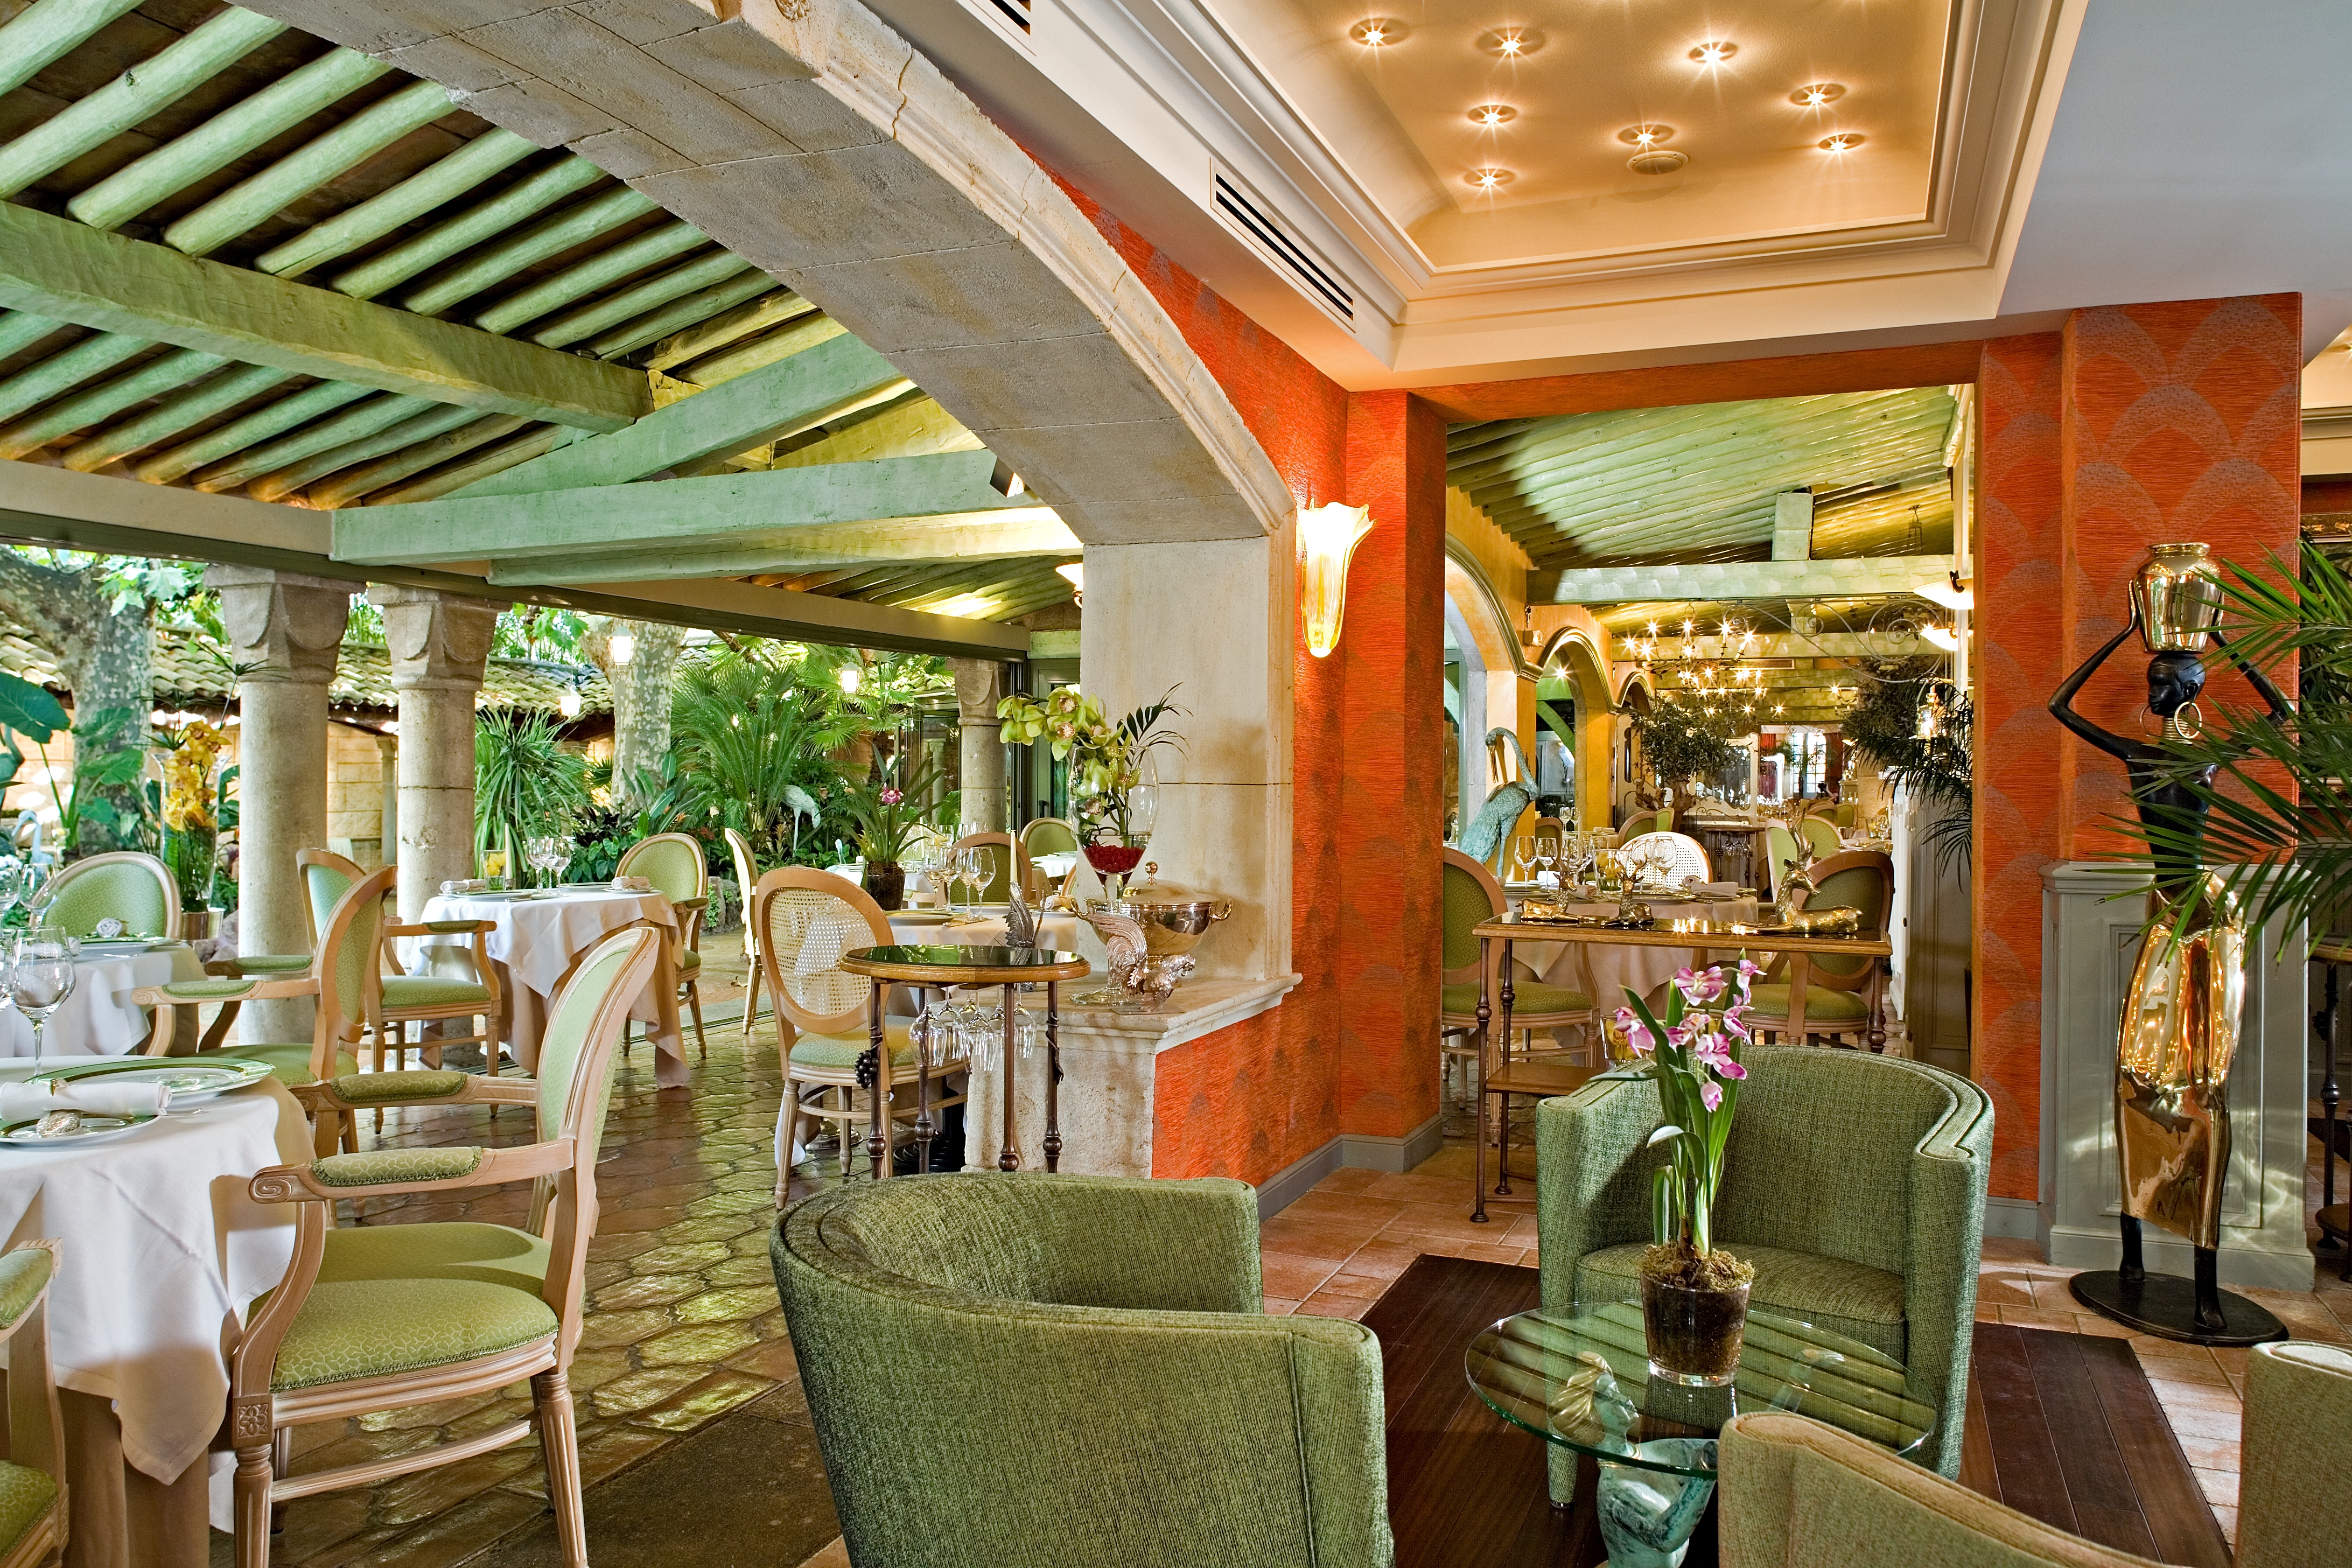 L'Oasis restaurant in Mandelieu-la-Napoule, France